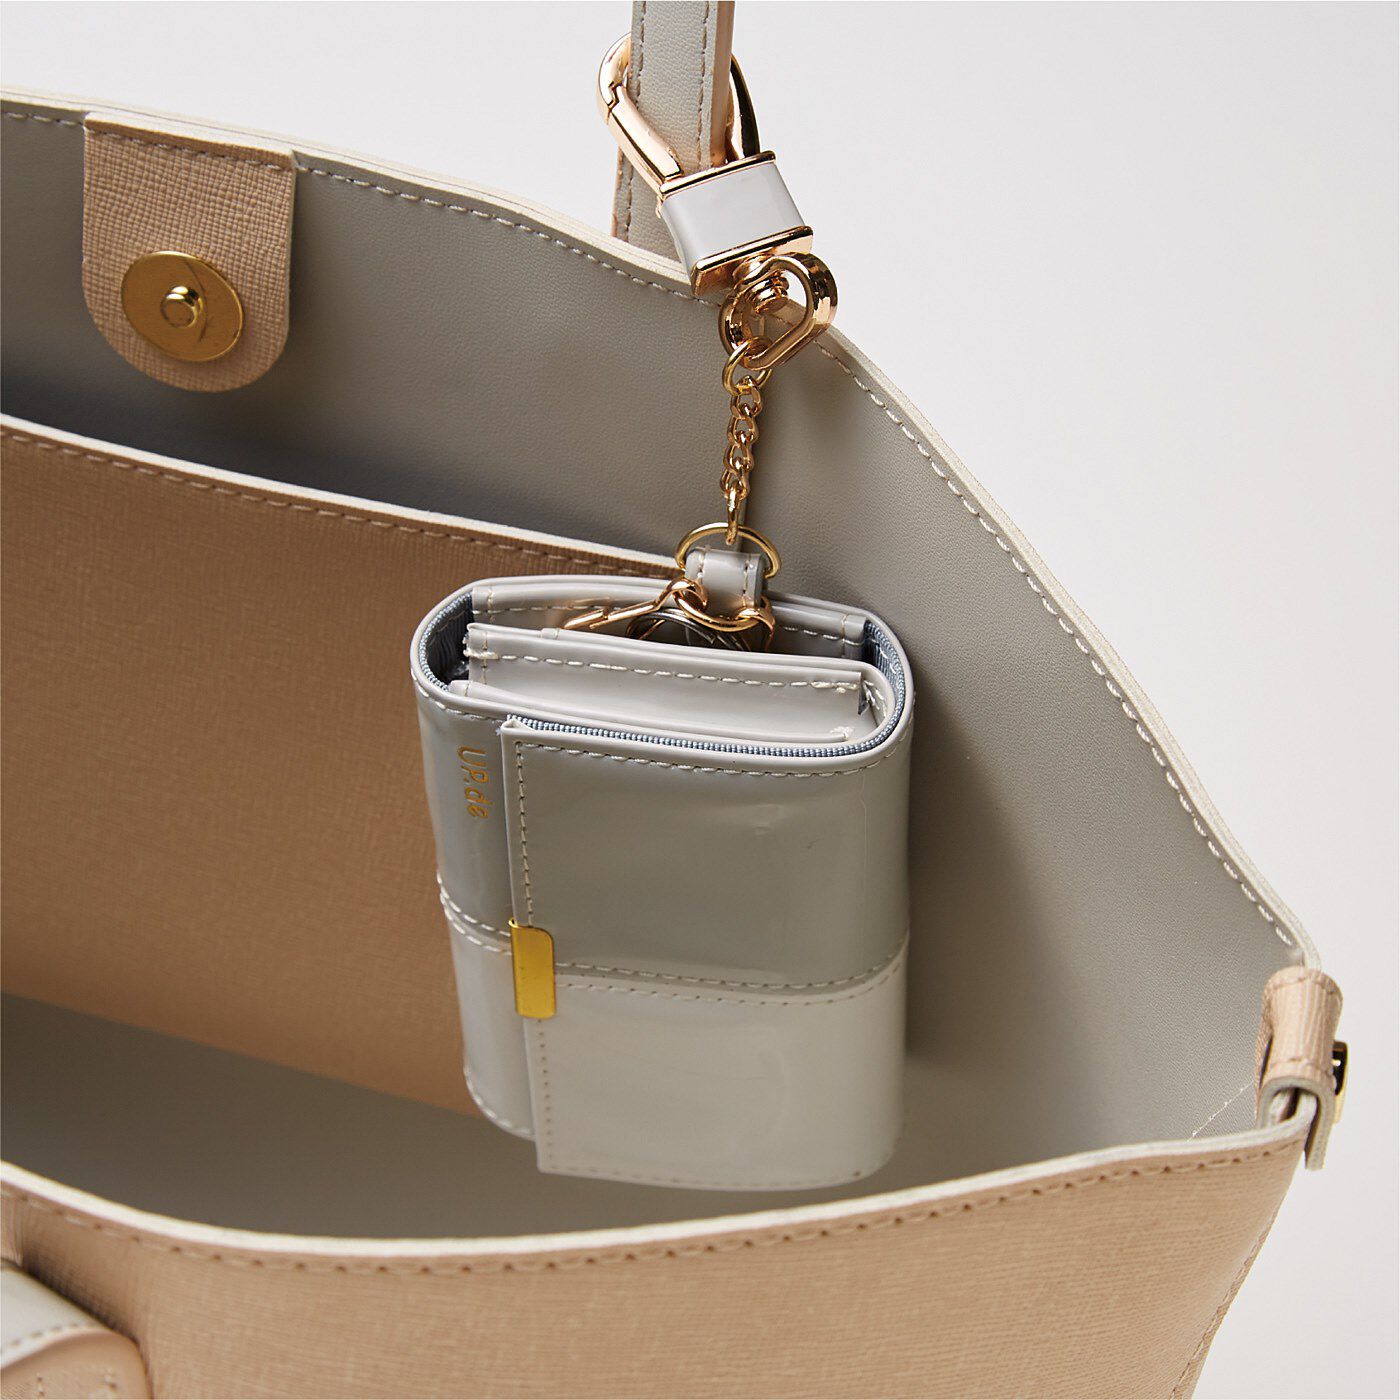 フェリシモの雑貨 クラソ|UP.de　キーリング付き 必要なものがきちんと収まる 手のひらサイズの大人エナメル財布の会|ナスカンでバッグの持ち手に取り付けることも。